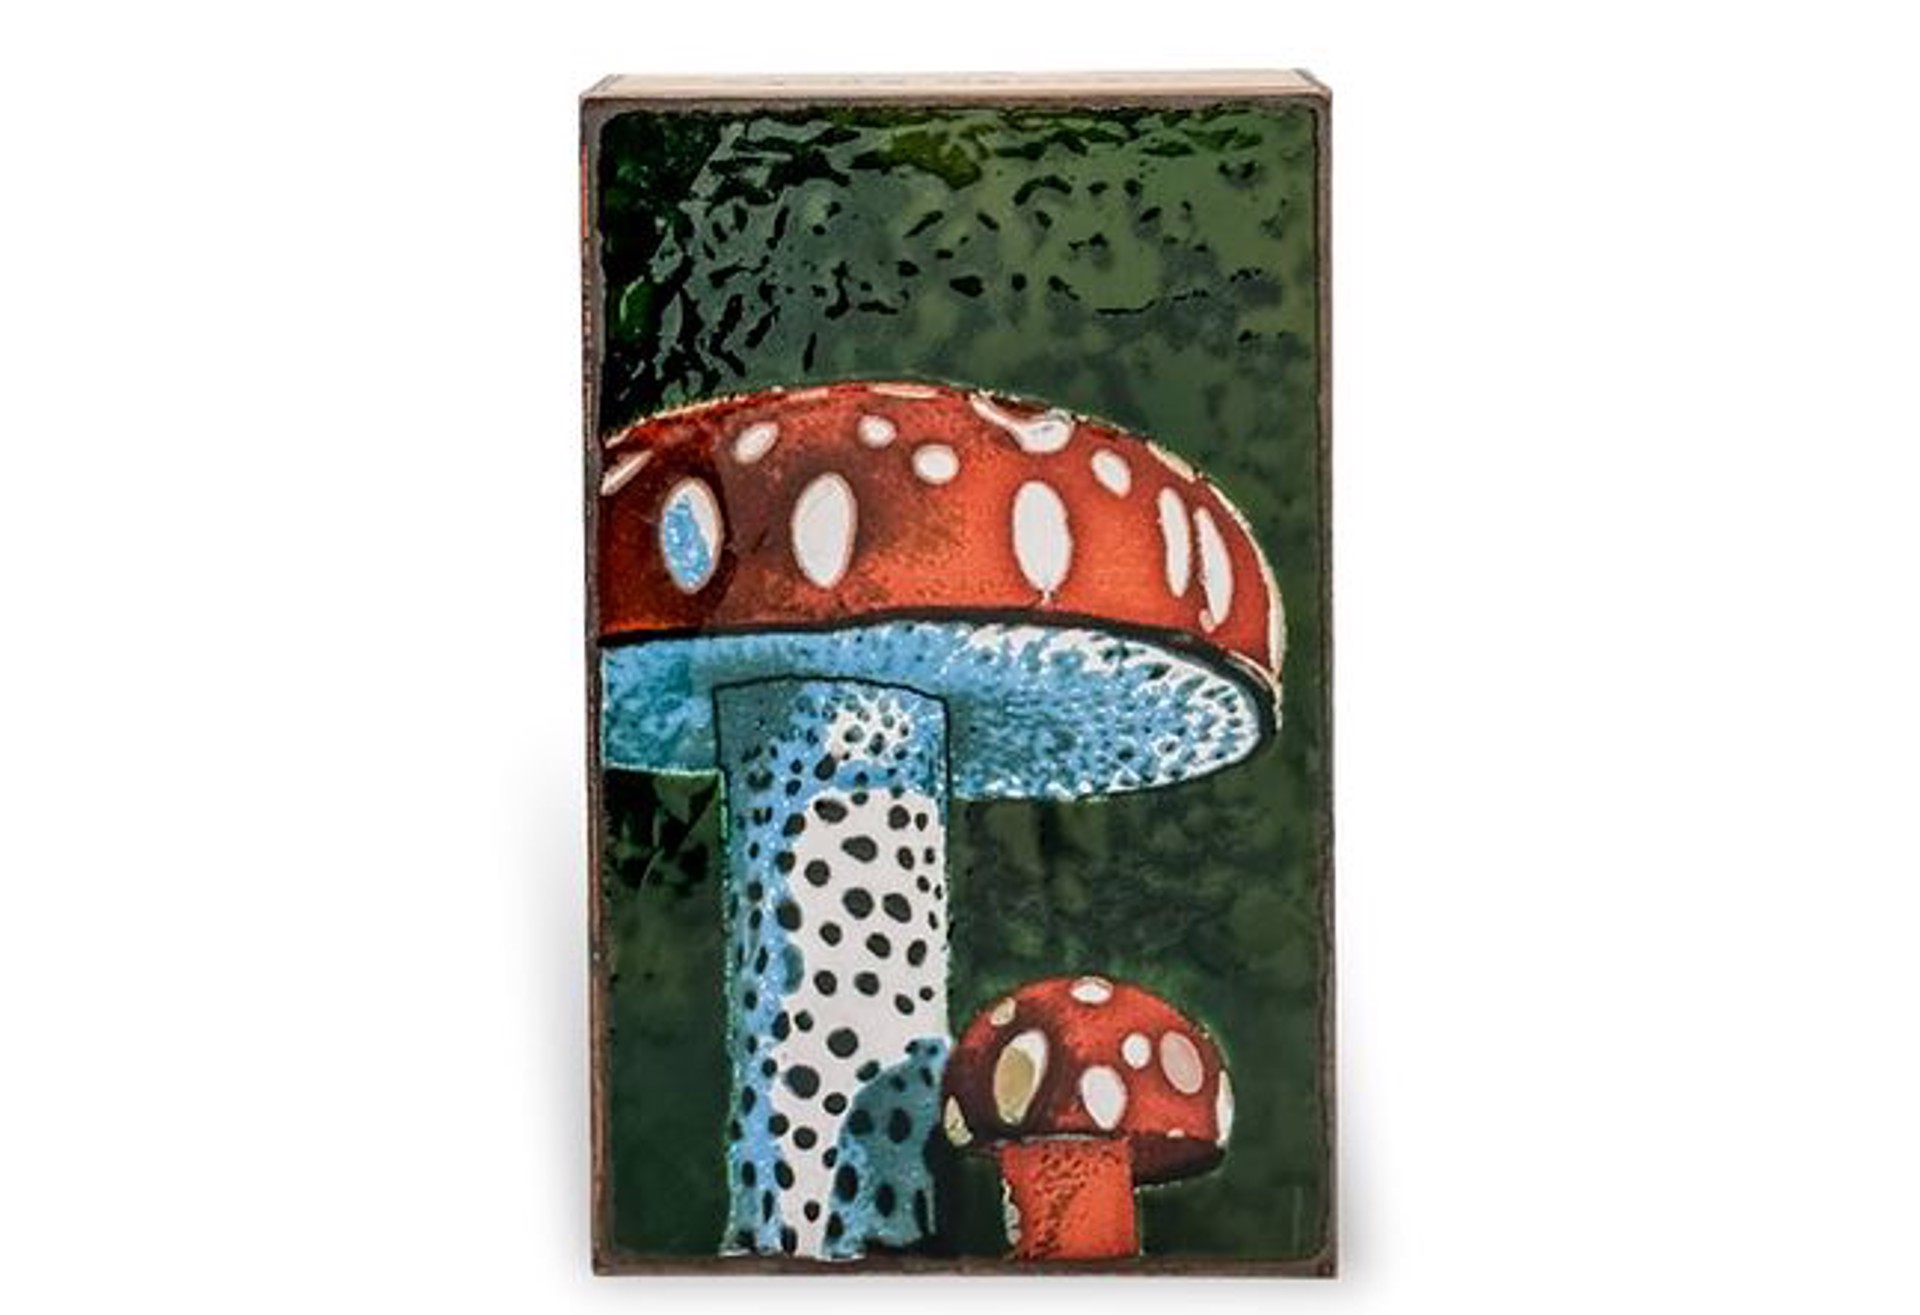 Mushroom 276 by Houston Llew